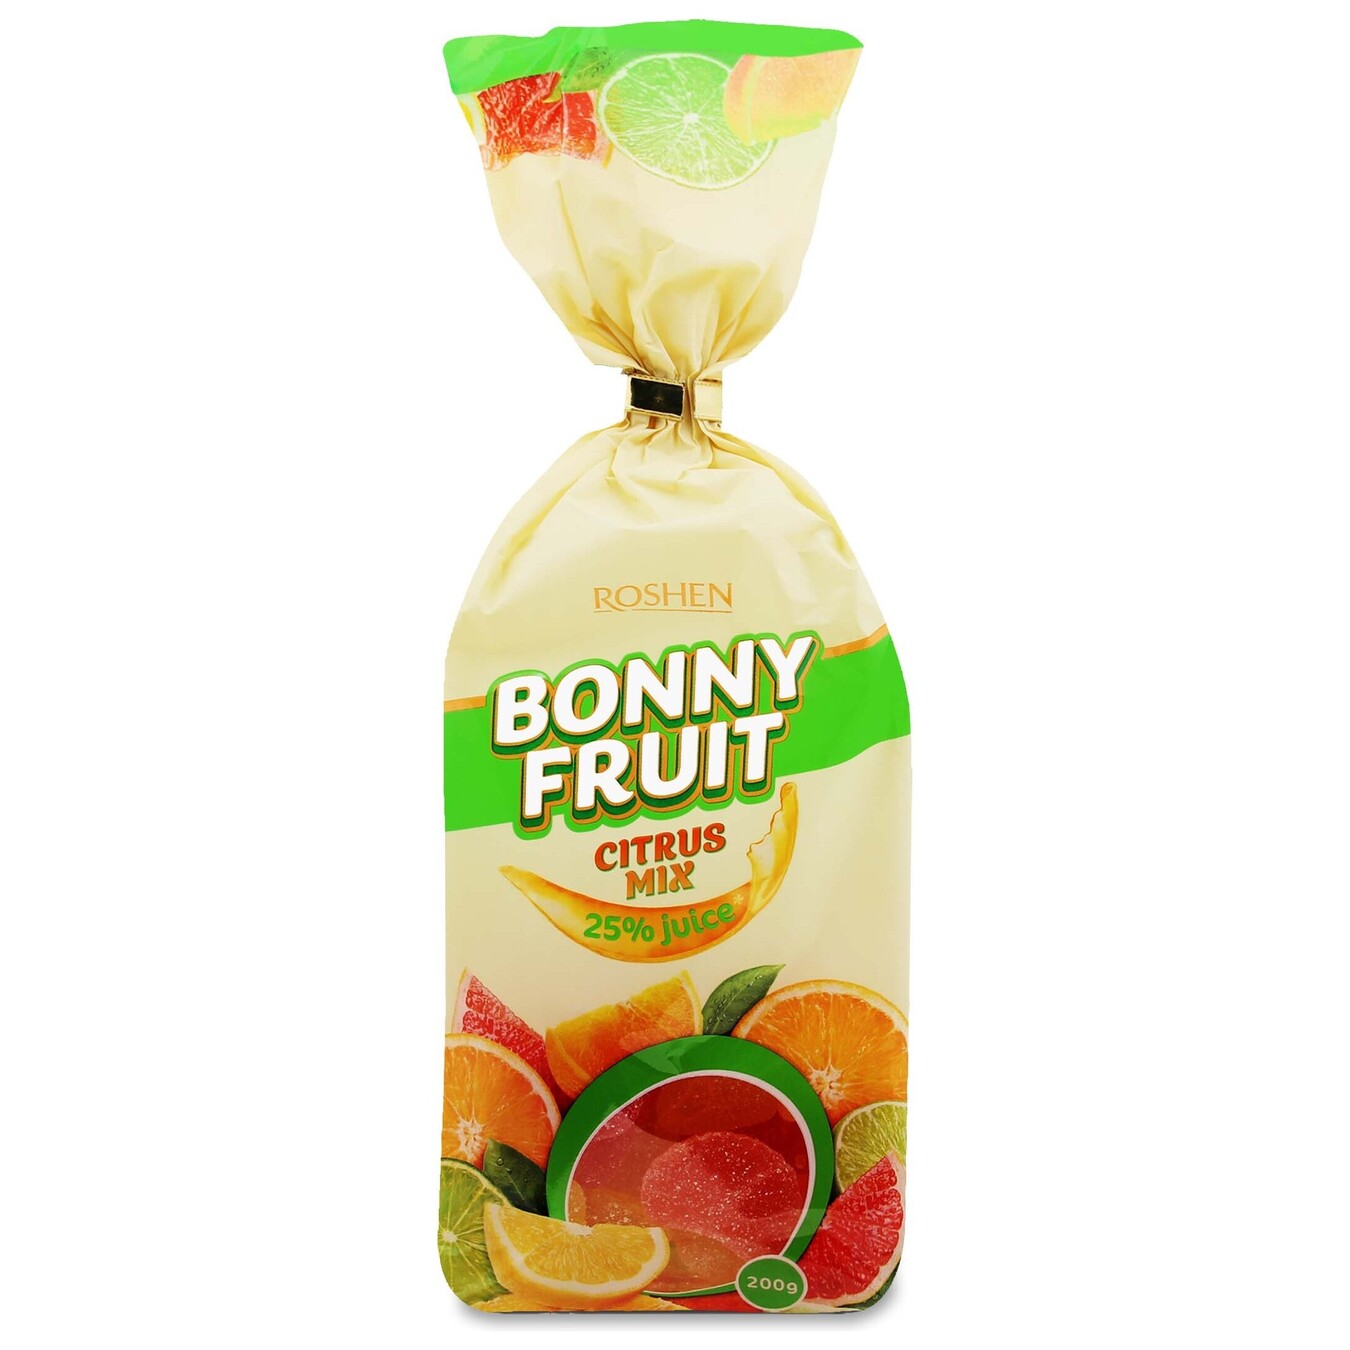 Roshen Bonny fruit citrus jellies candy 200g